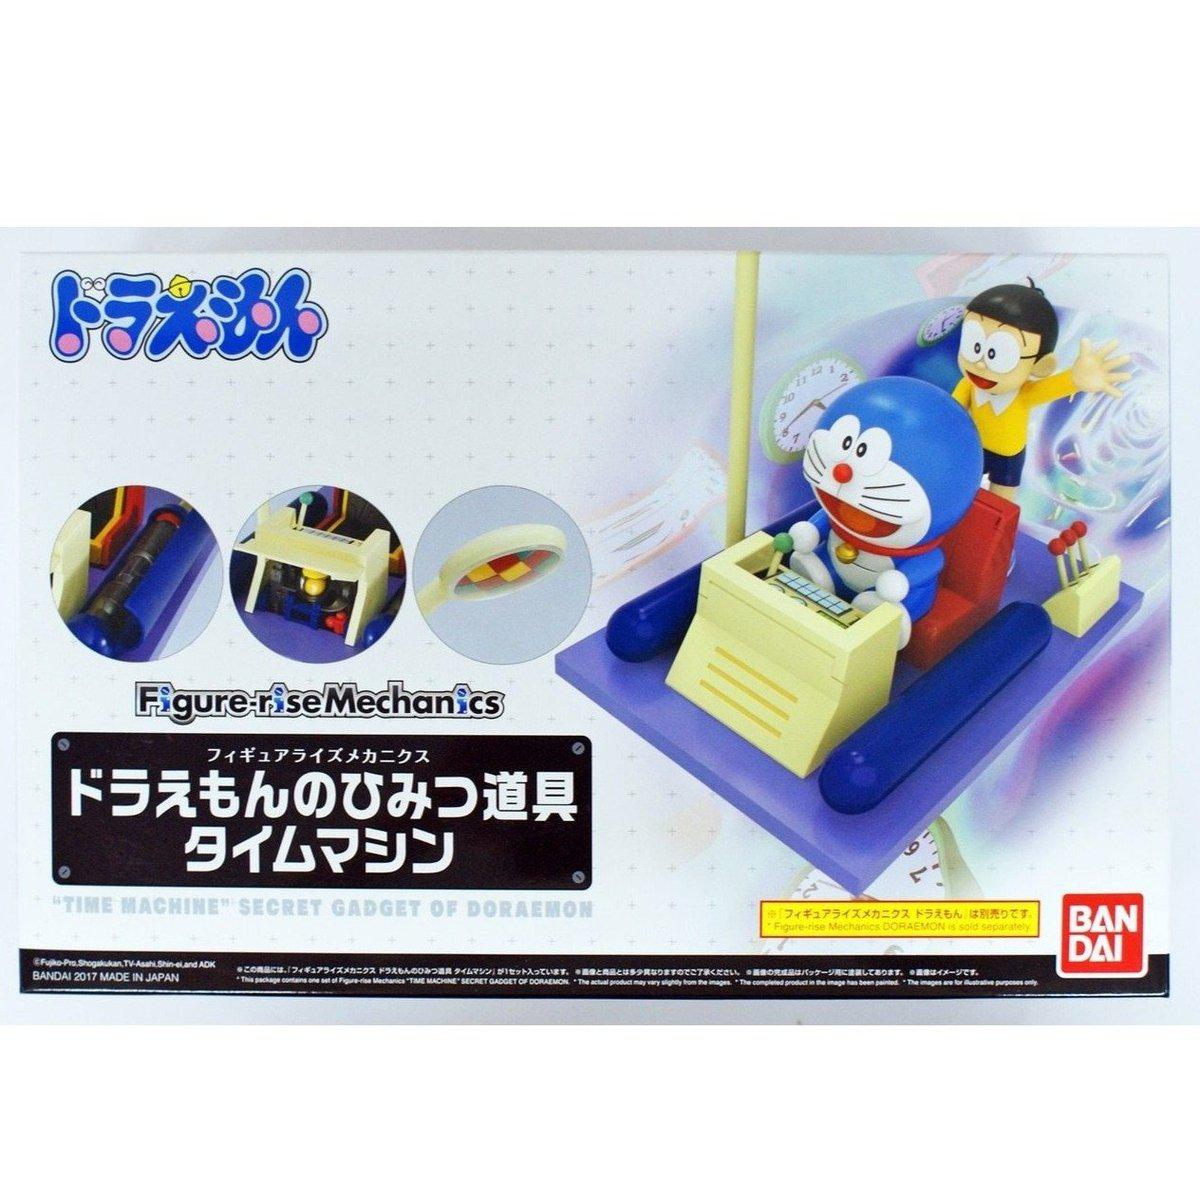 Doraemon Figure-rise Mechanics "Time Machine" Secret Gadget of Doraemon-Bandai-Ace Cards & Collectibles